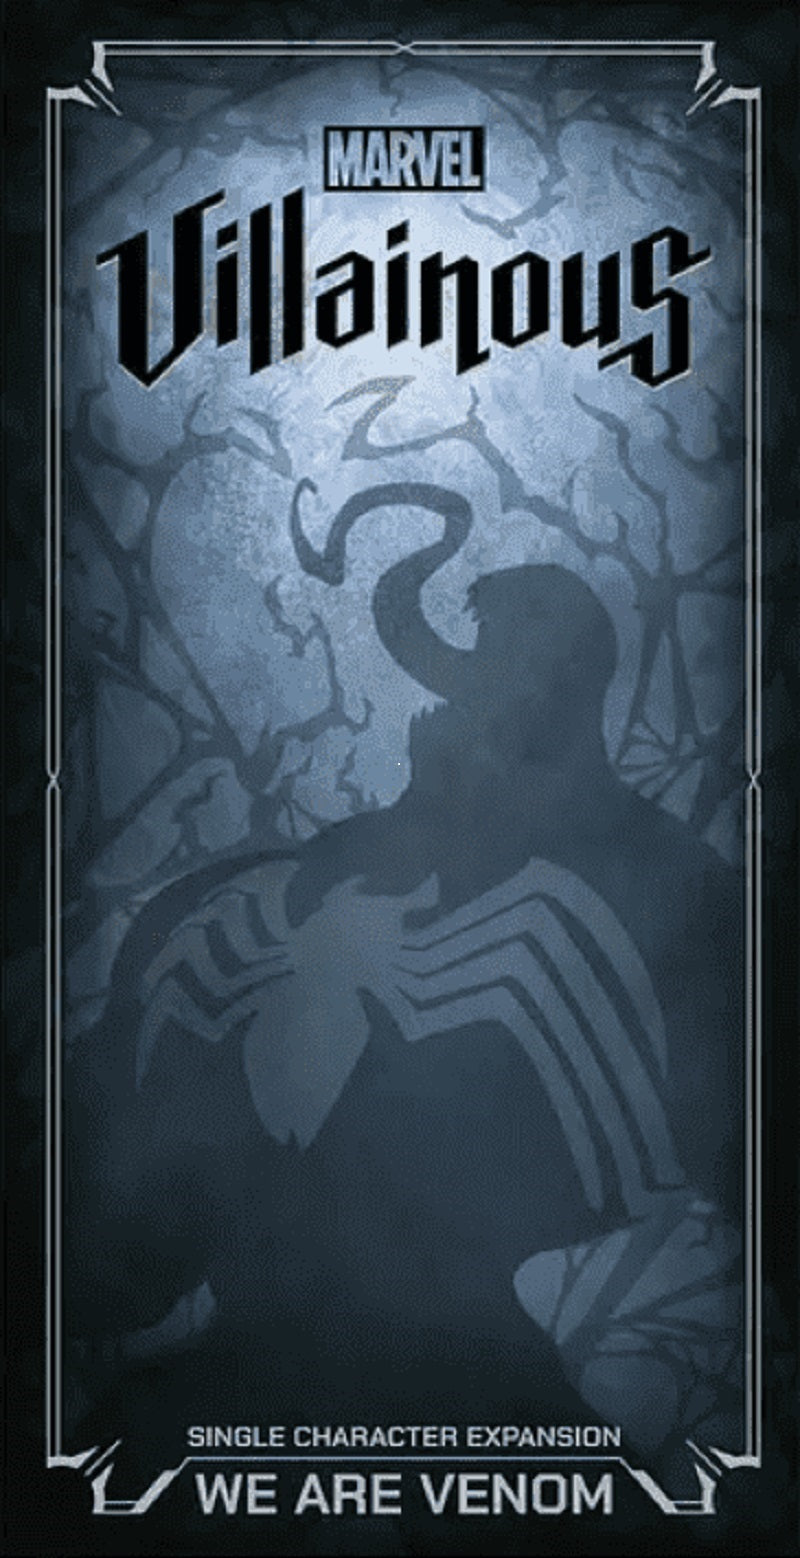 Marvel Villainous We Are Venom | Game Master's Emporium (The New GME)